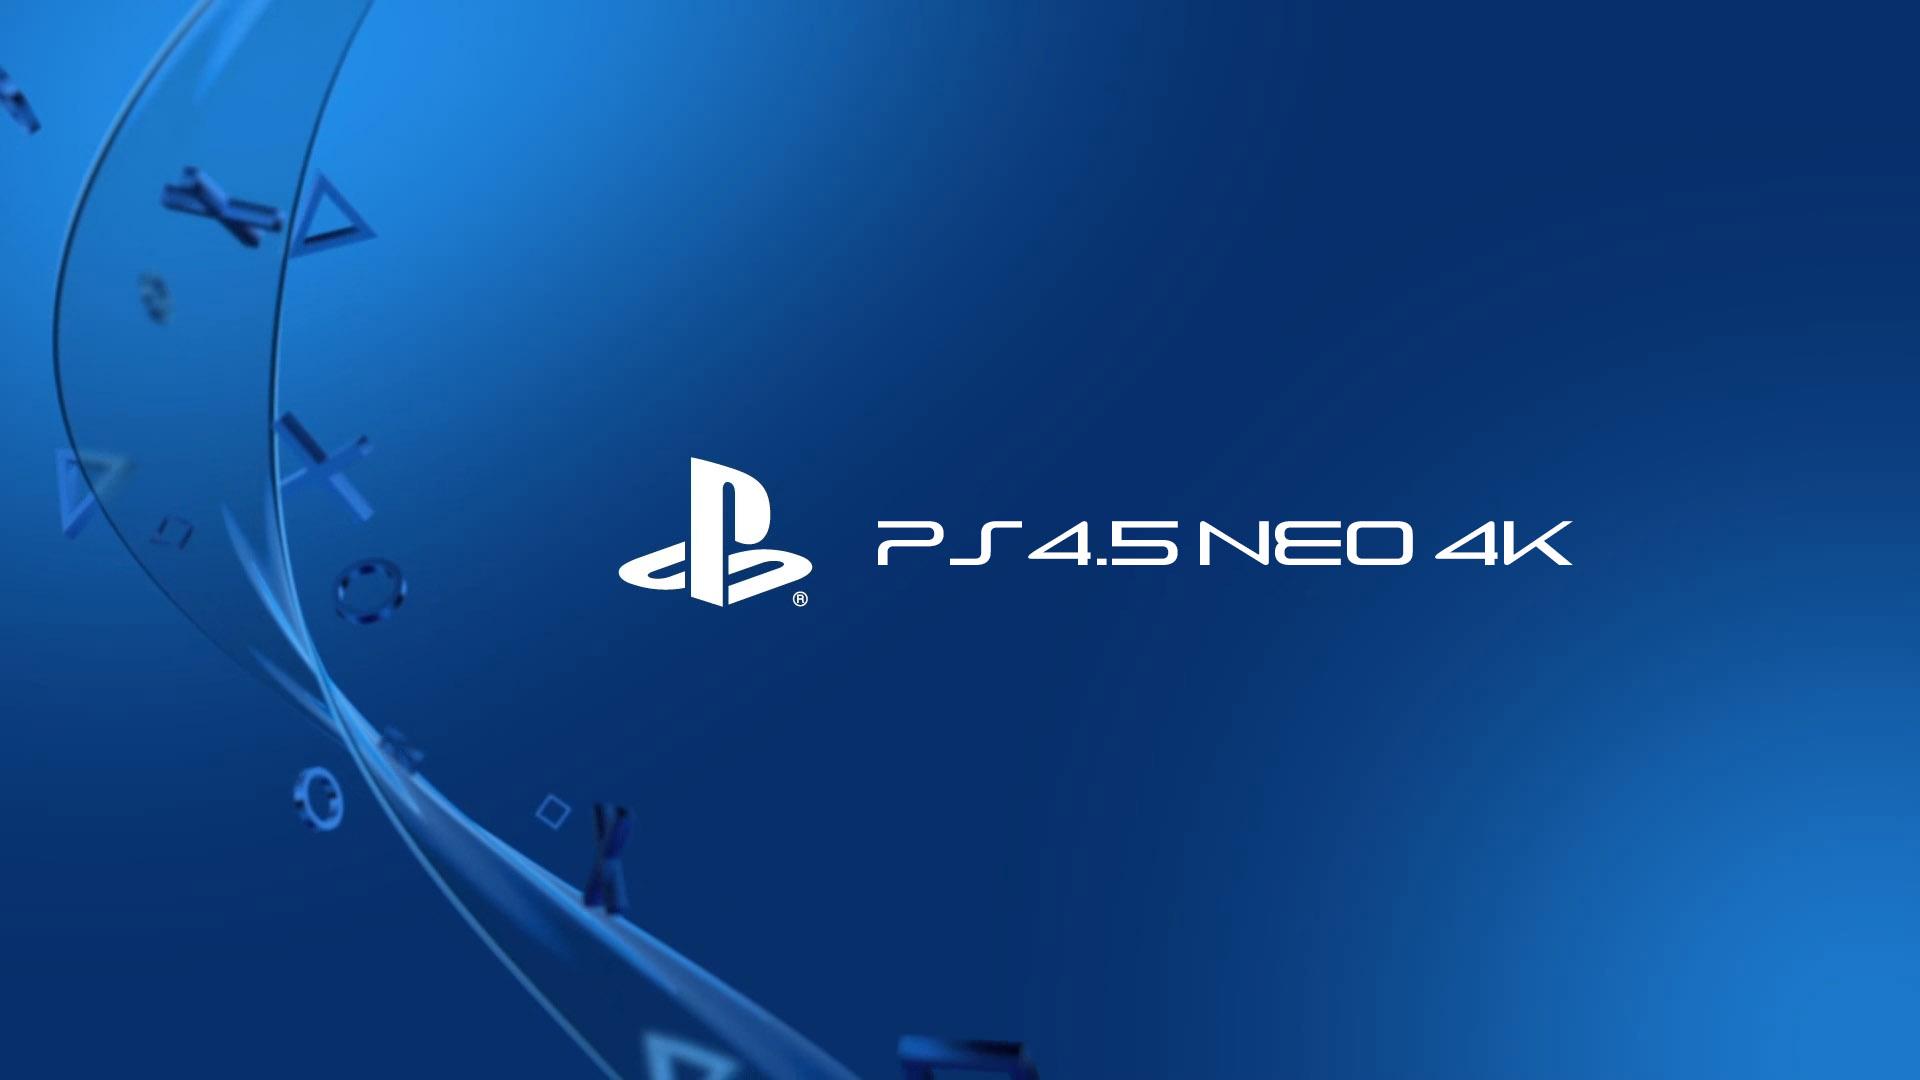 PS4 Neo no acortará la vida de la PS4 tradicional